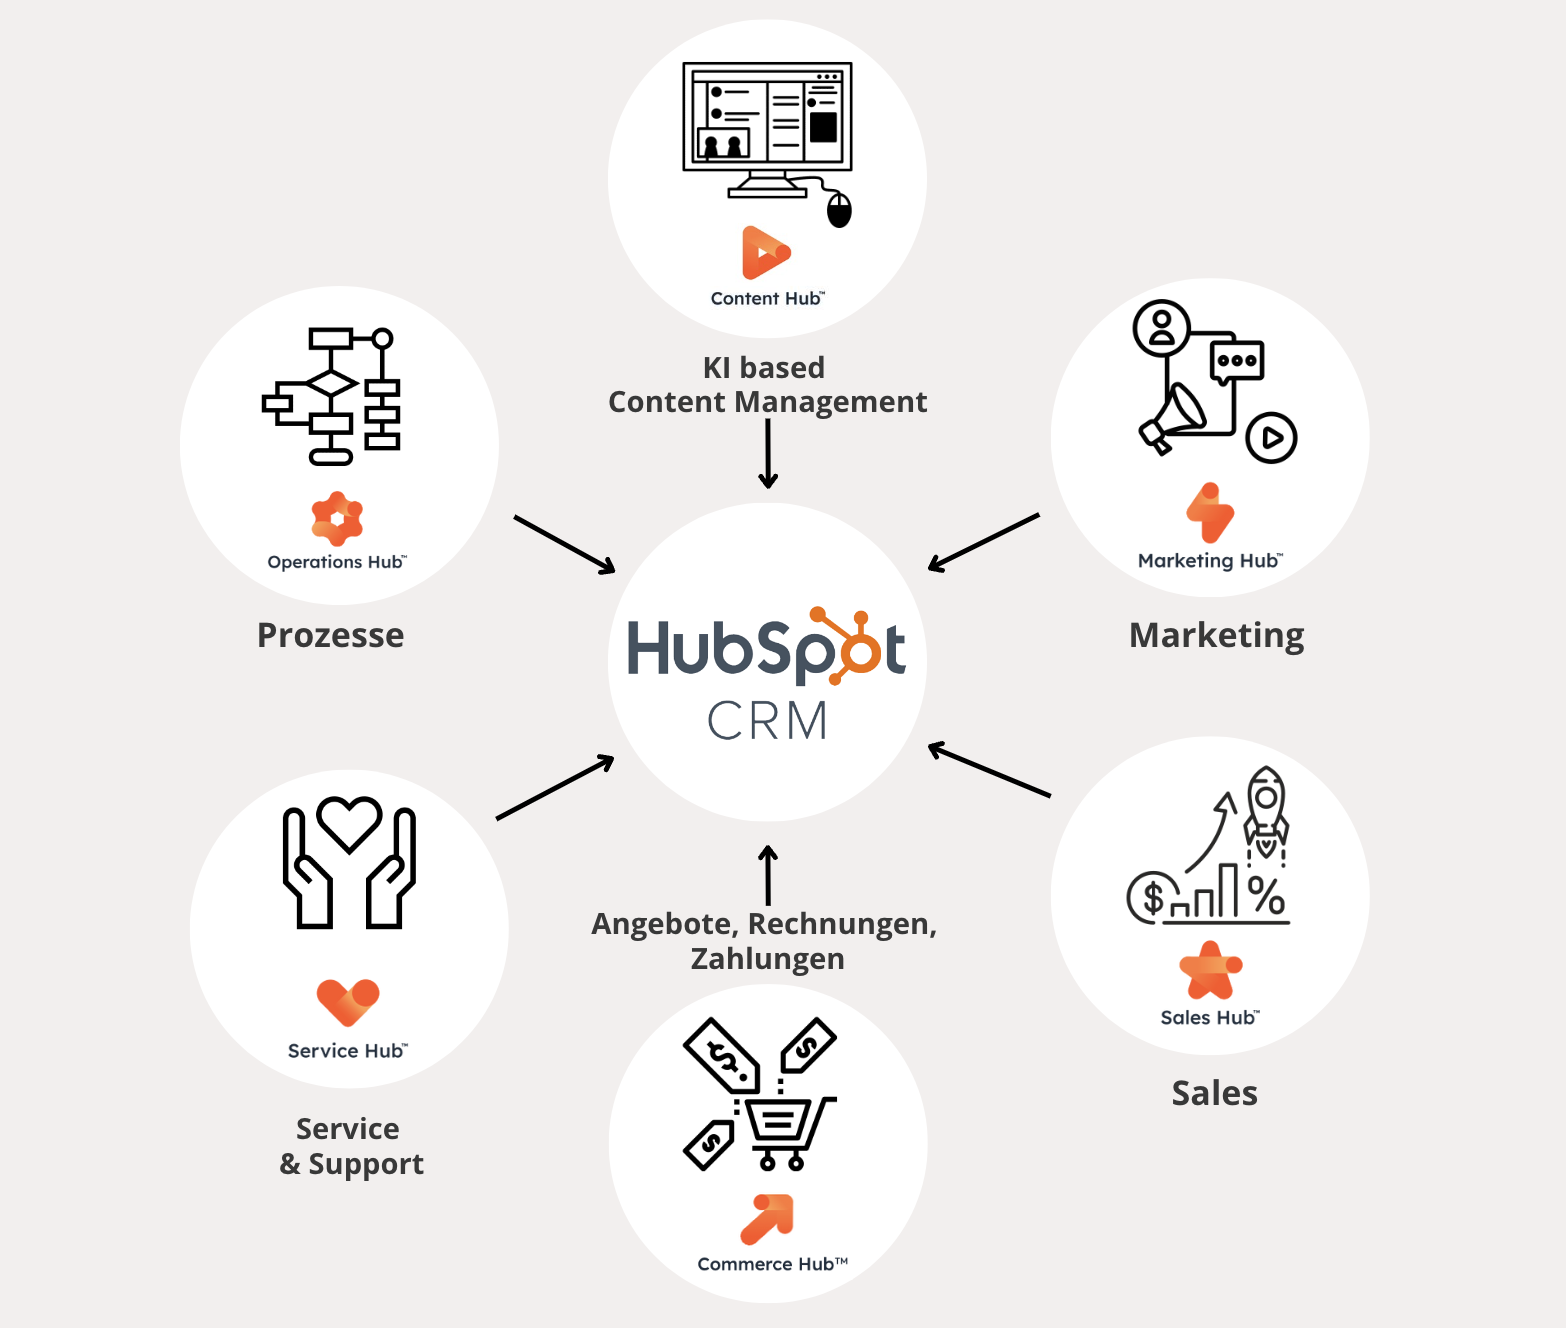 HubSpot Partner mit Full Service-Ansatz: als zertifizierte HubSpot Agentur unterstützt viminds dich mit Beratung, Konzeption und Betreuung bei allen Themen.